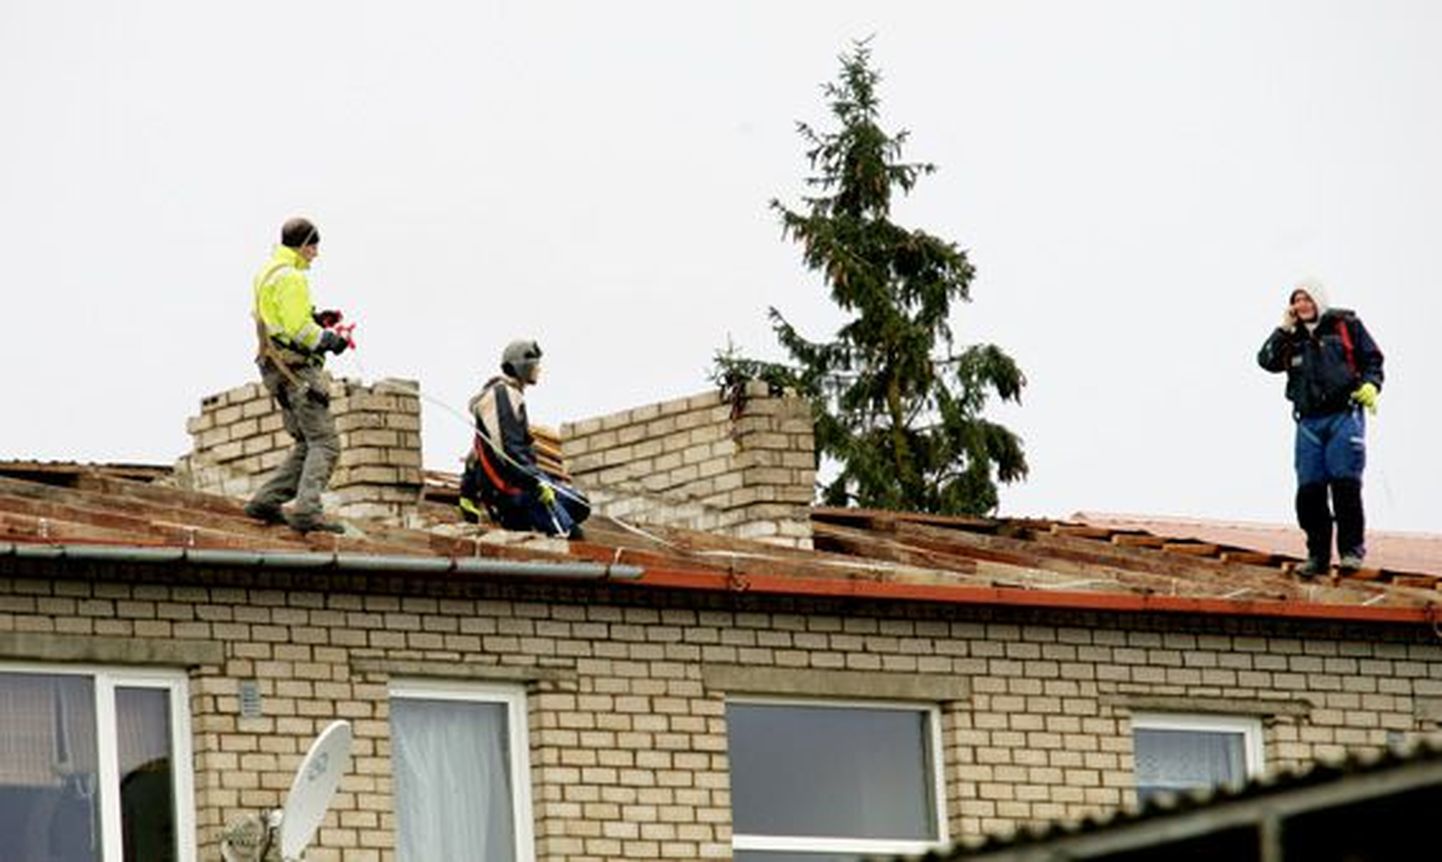 Tugevad tuuleiilid lõhkusid mitmete hoonete katuseid, ühe neist Näpil. Eile käisid seal tööd tormi tagajärgede likvideerimiseks.